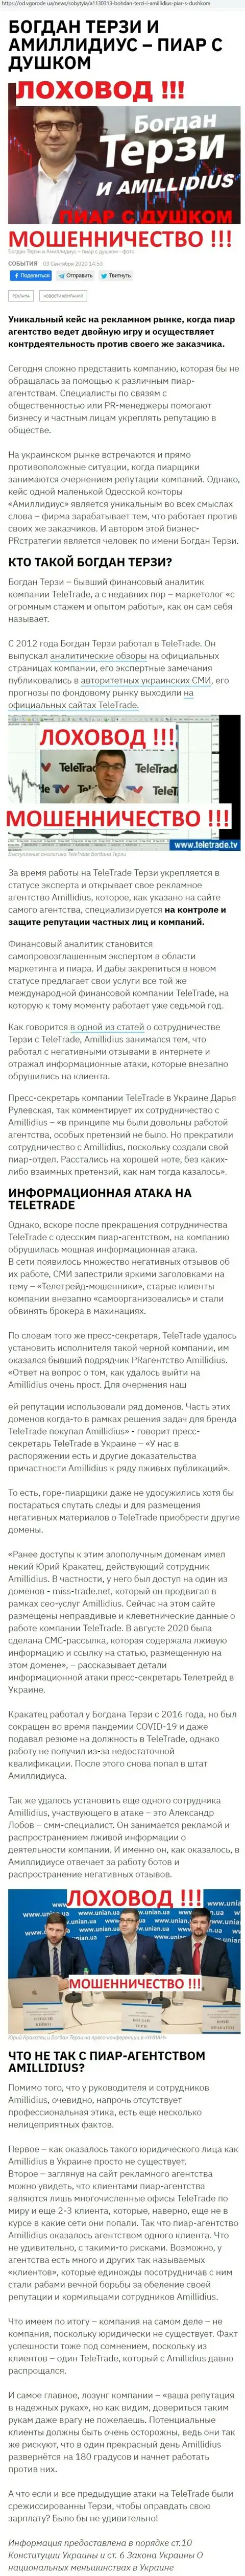 Богдан Терзи рискованный партнер, информация со слов бывшего сотрудника пиар-фирмы Амиллидиус Ком